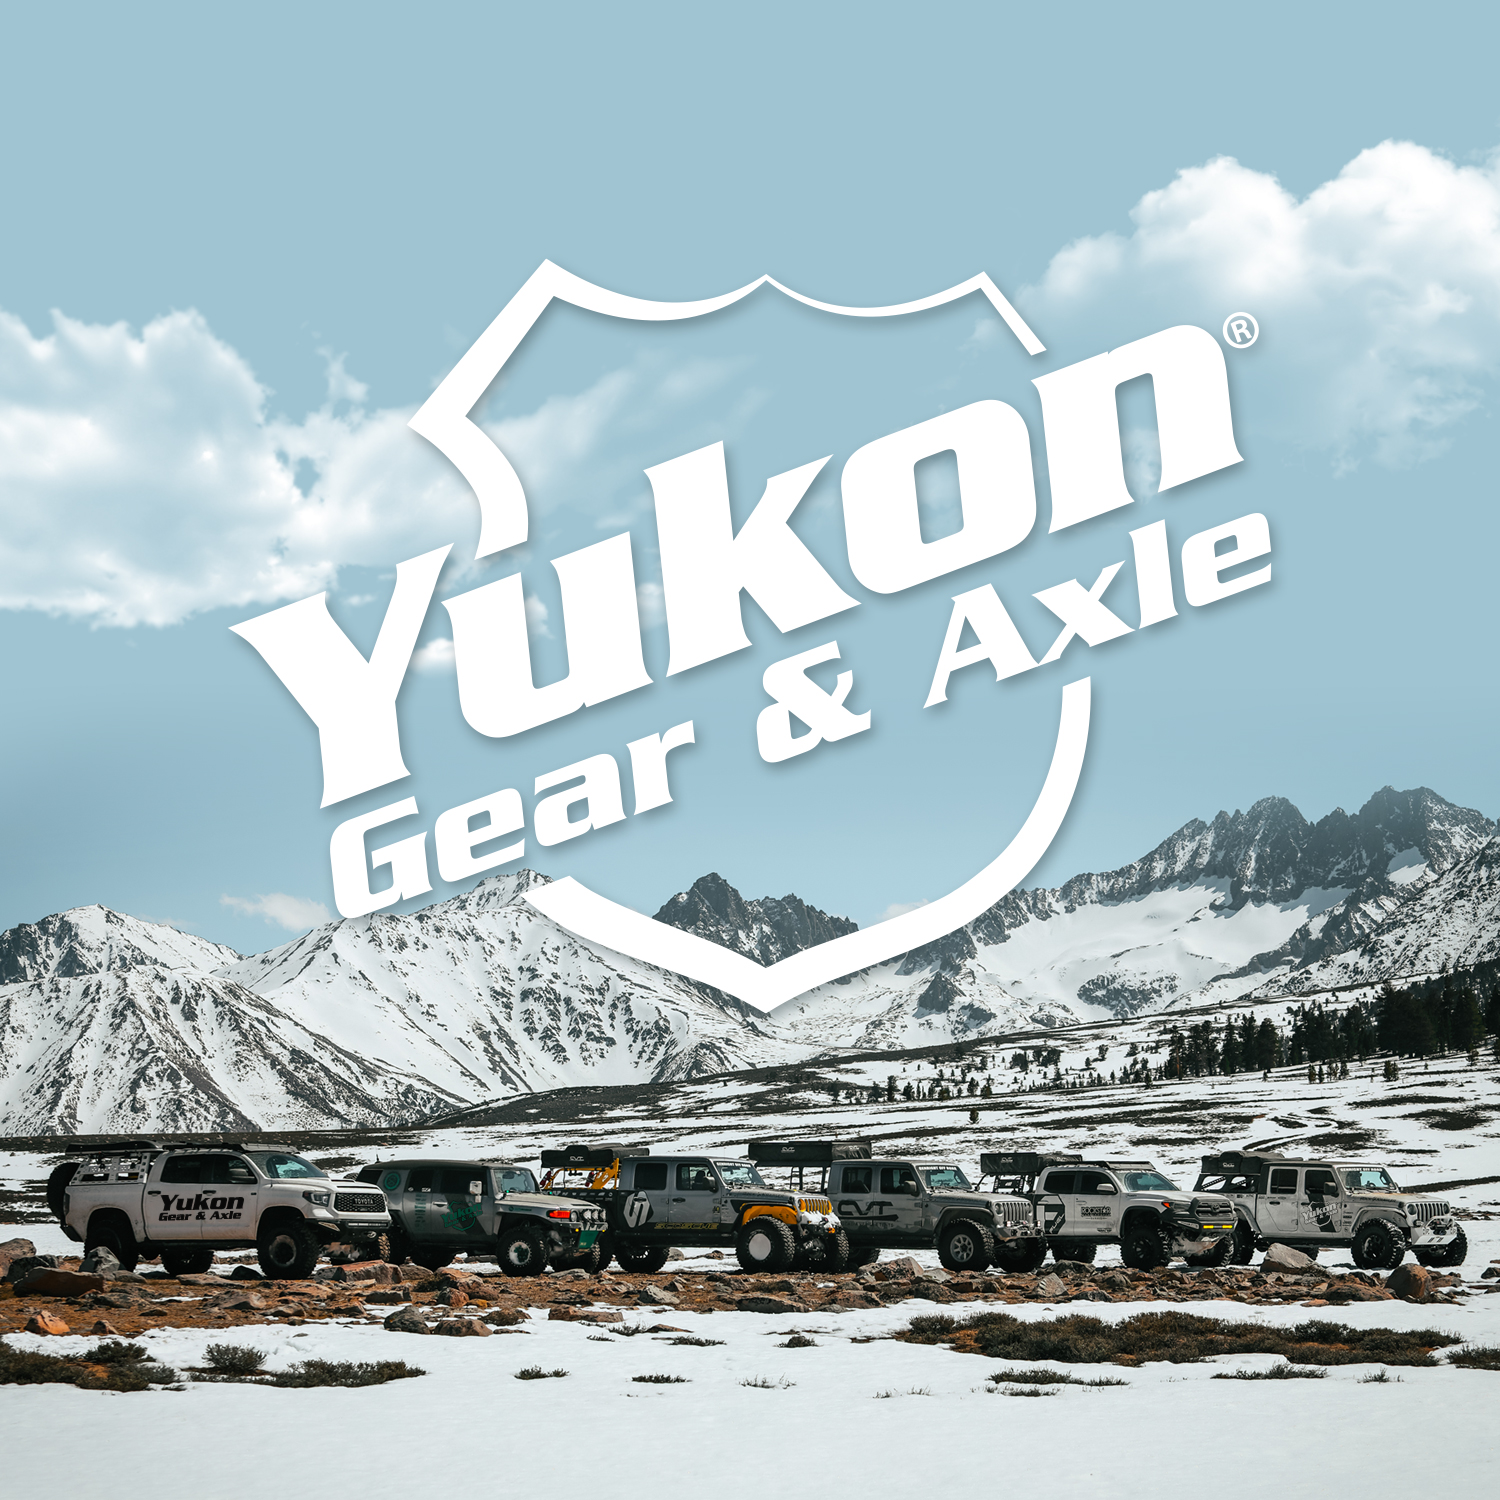 Yukon standard open spider gear replacement kit for Dana 44-HD, 30 spline 